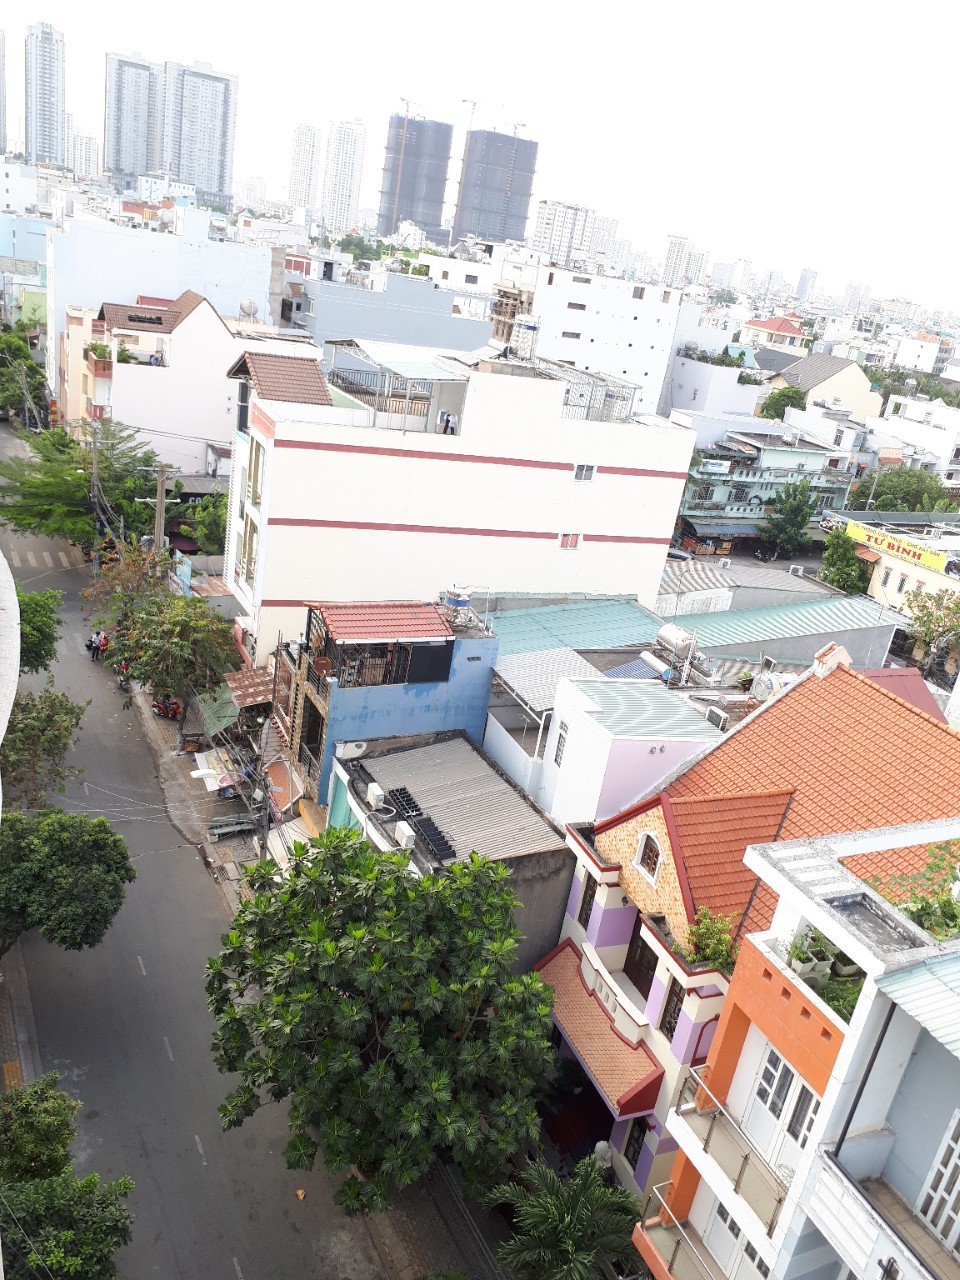 Bán nhà đường Số 21, phường Tân Quy, liền kề chợ. Giá 6.7 tỷ, LH 0983105737